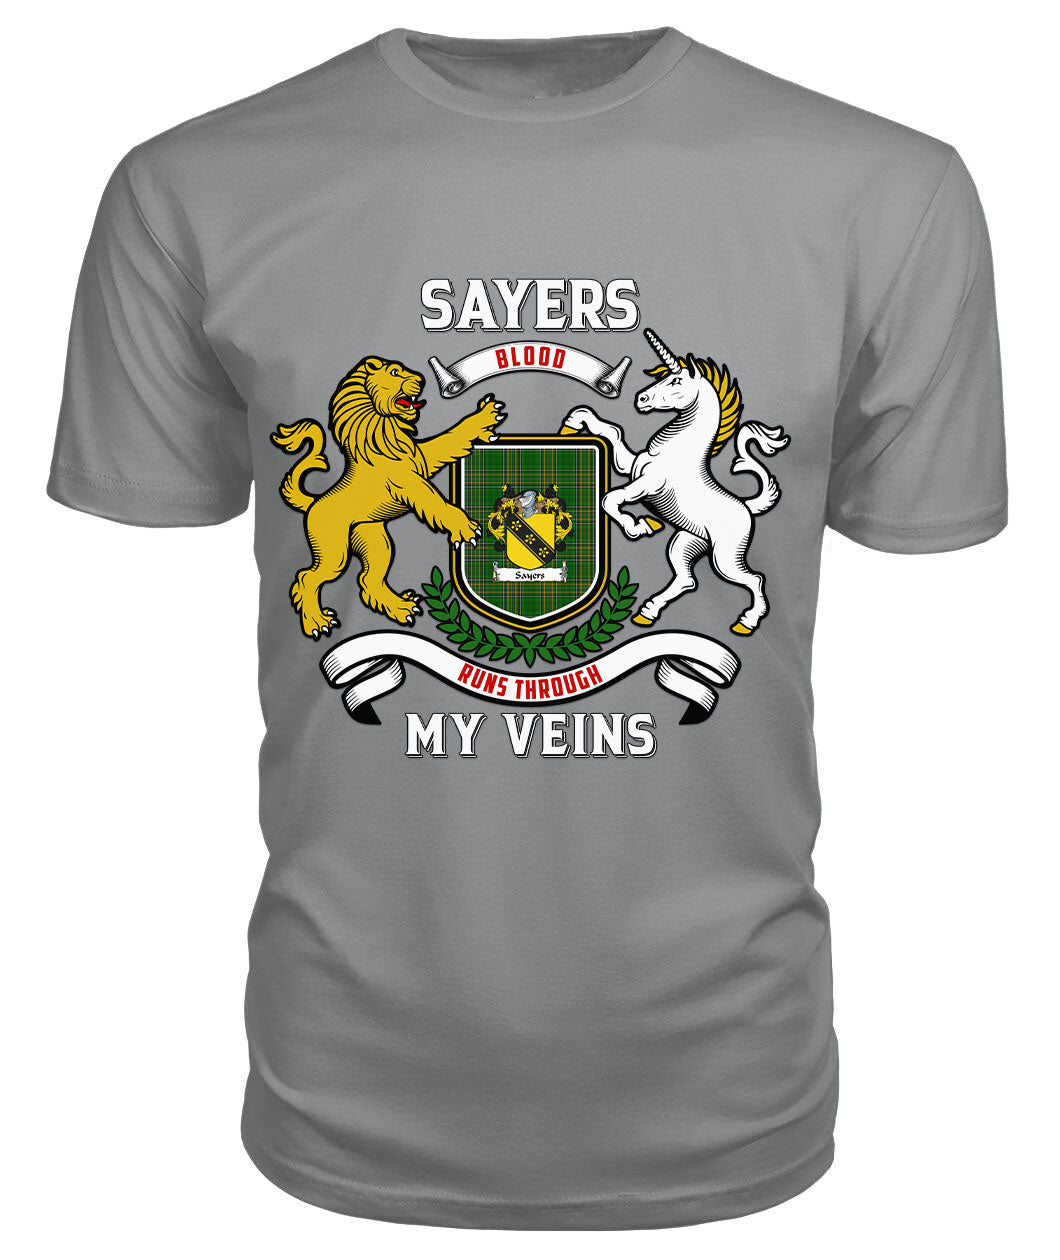 Sayers Tartan Crest 2D T-shirt - Blood Runs Through My Veins Style